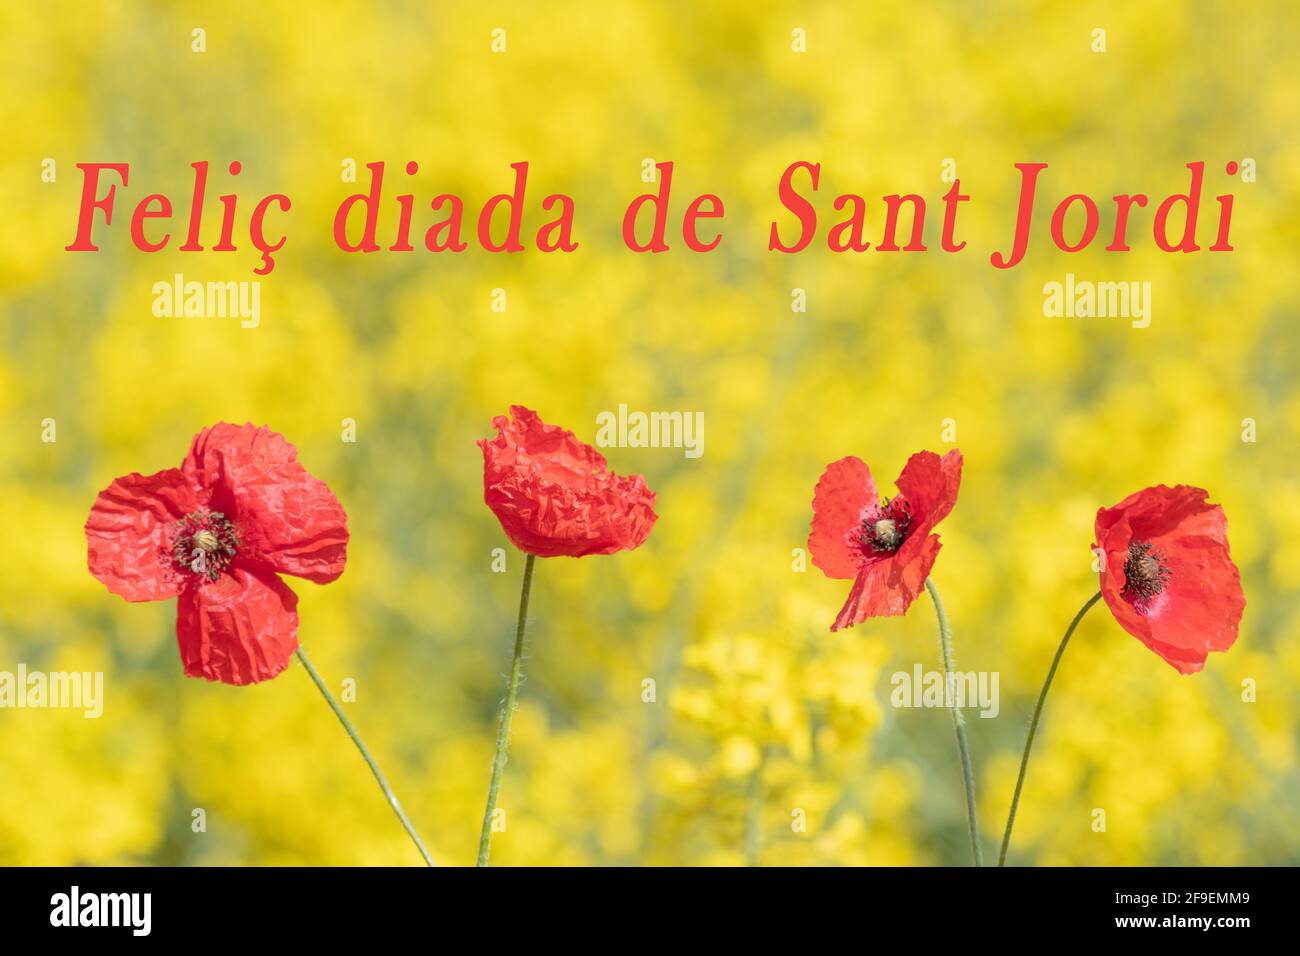 Fotografía con fondo amarillo y cuatro amapolas rojas emulando la bandera  de Cataluña, especialmente para el día de San Jorge, el día del libro y el  r Fotografía de stock - Alamy